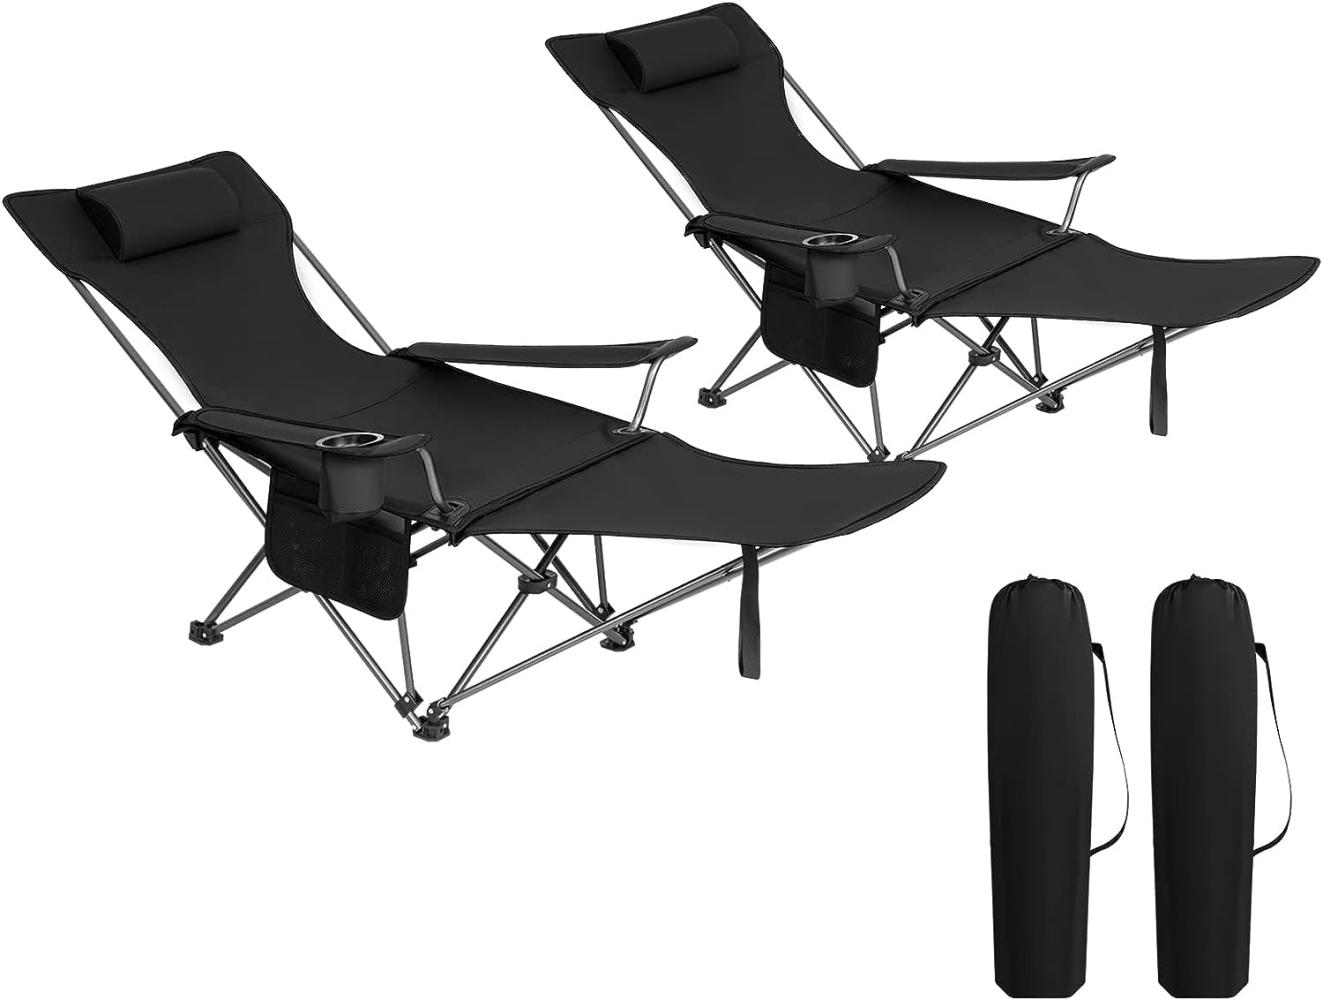 WOLTU 2er Set Campingstuhl klappbarer, Klappstuhl Liegestuhl für Outdoor, Angelstuhl Sonnenstuhl ultraleichter mit Armlehnen und Getränkehalter Schwarz Bild 1